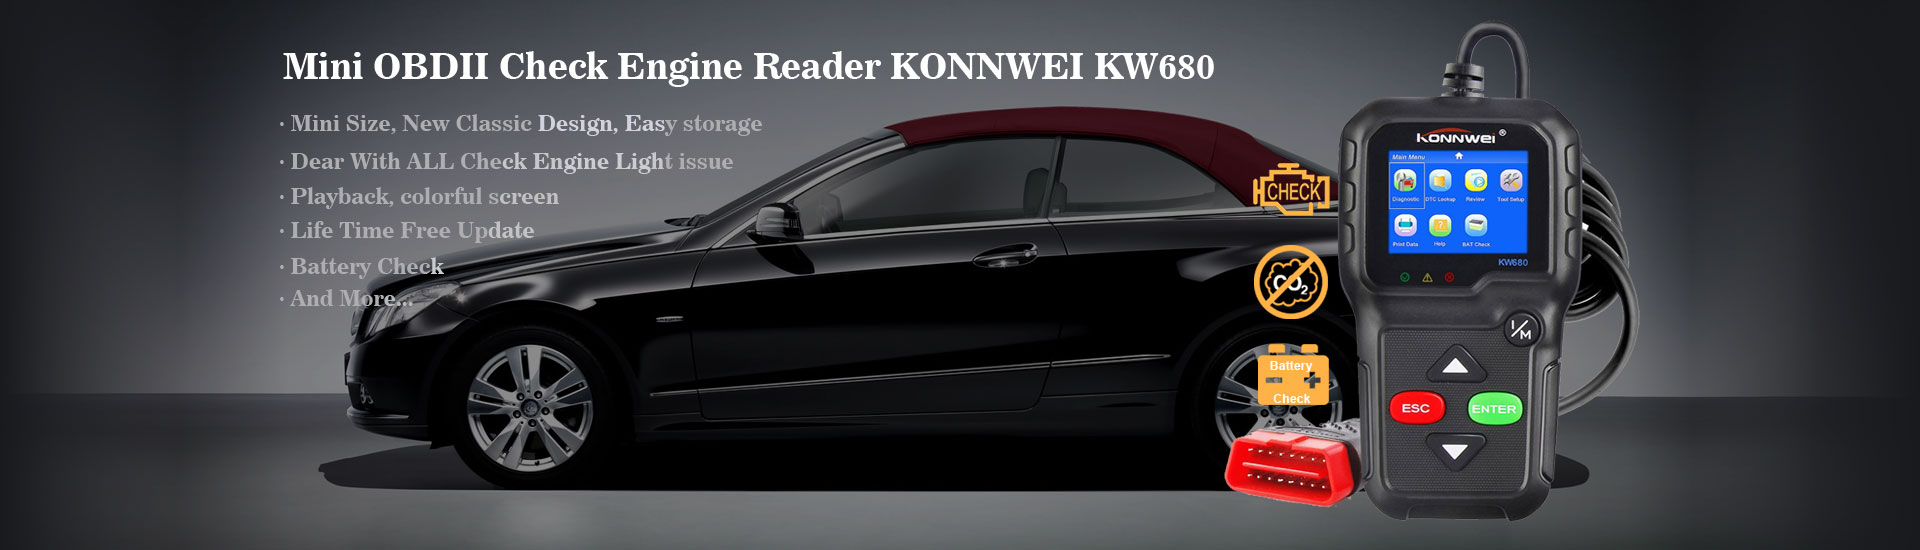 دستگاه دیاگ حرفه ای خودرو برند KONNWEI مدل KW680